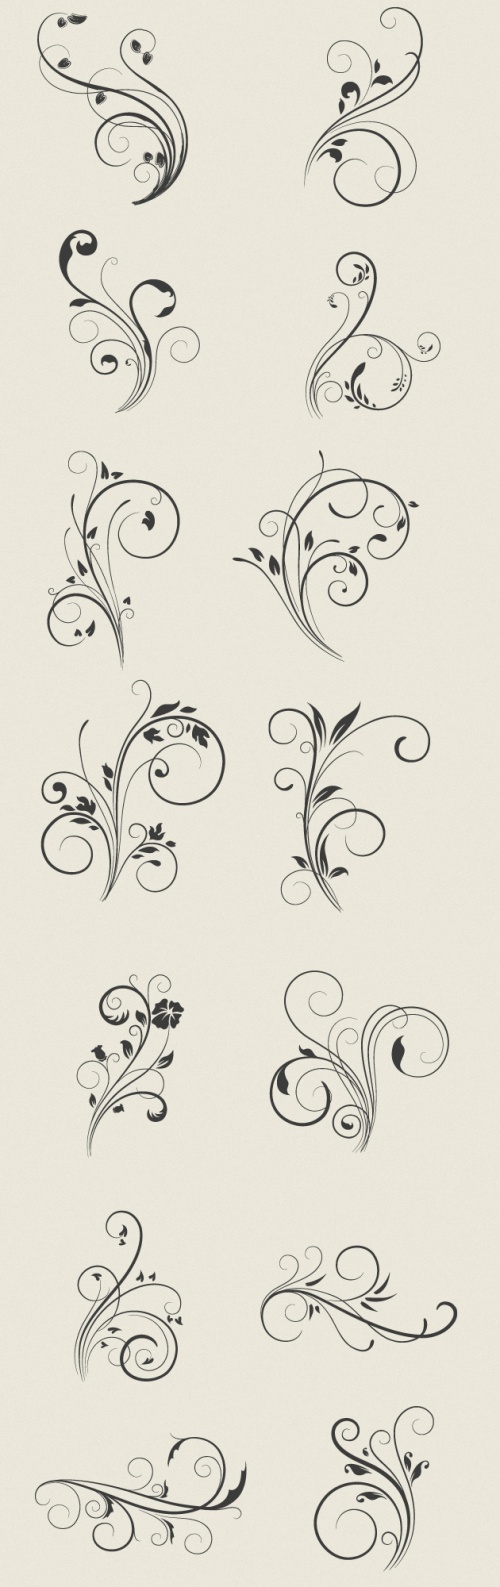 Designtnt - Vector Floral Swirls